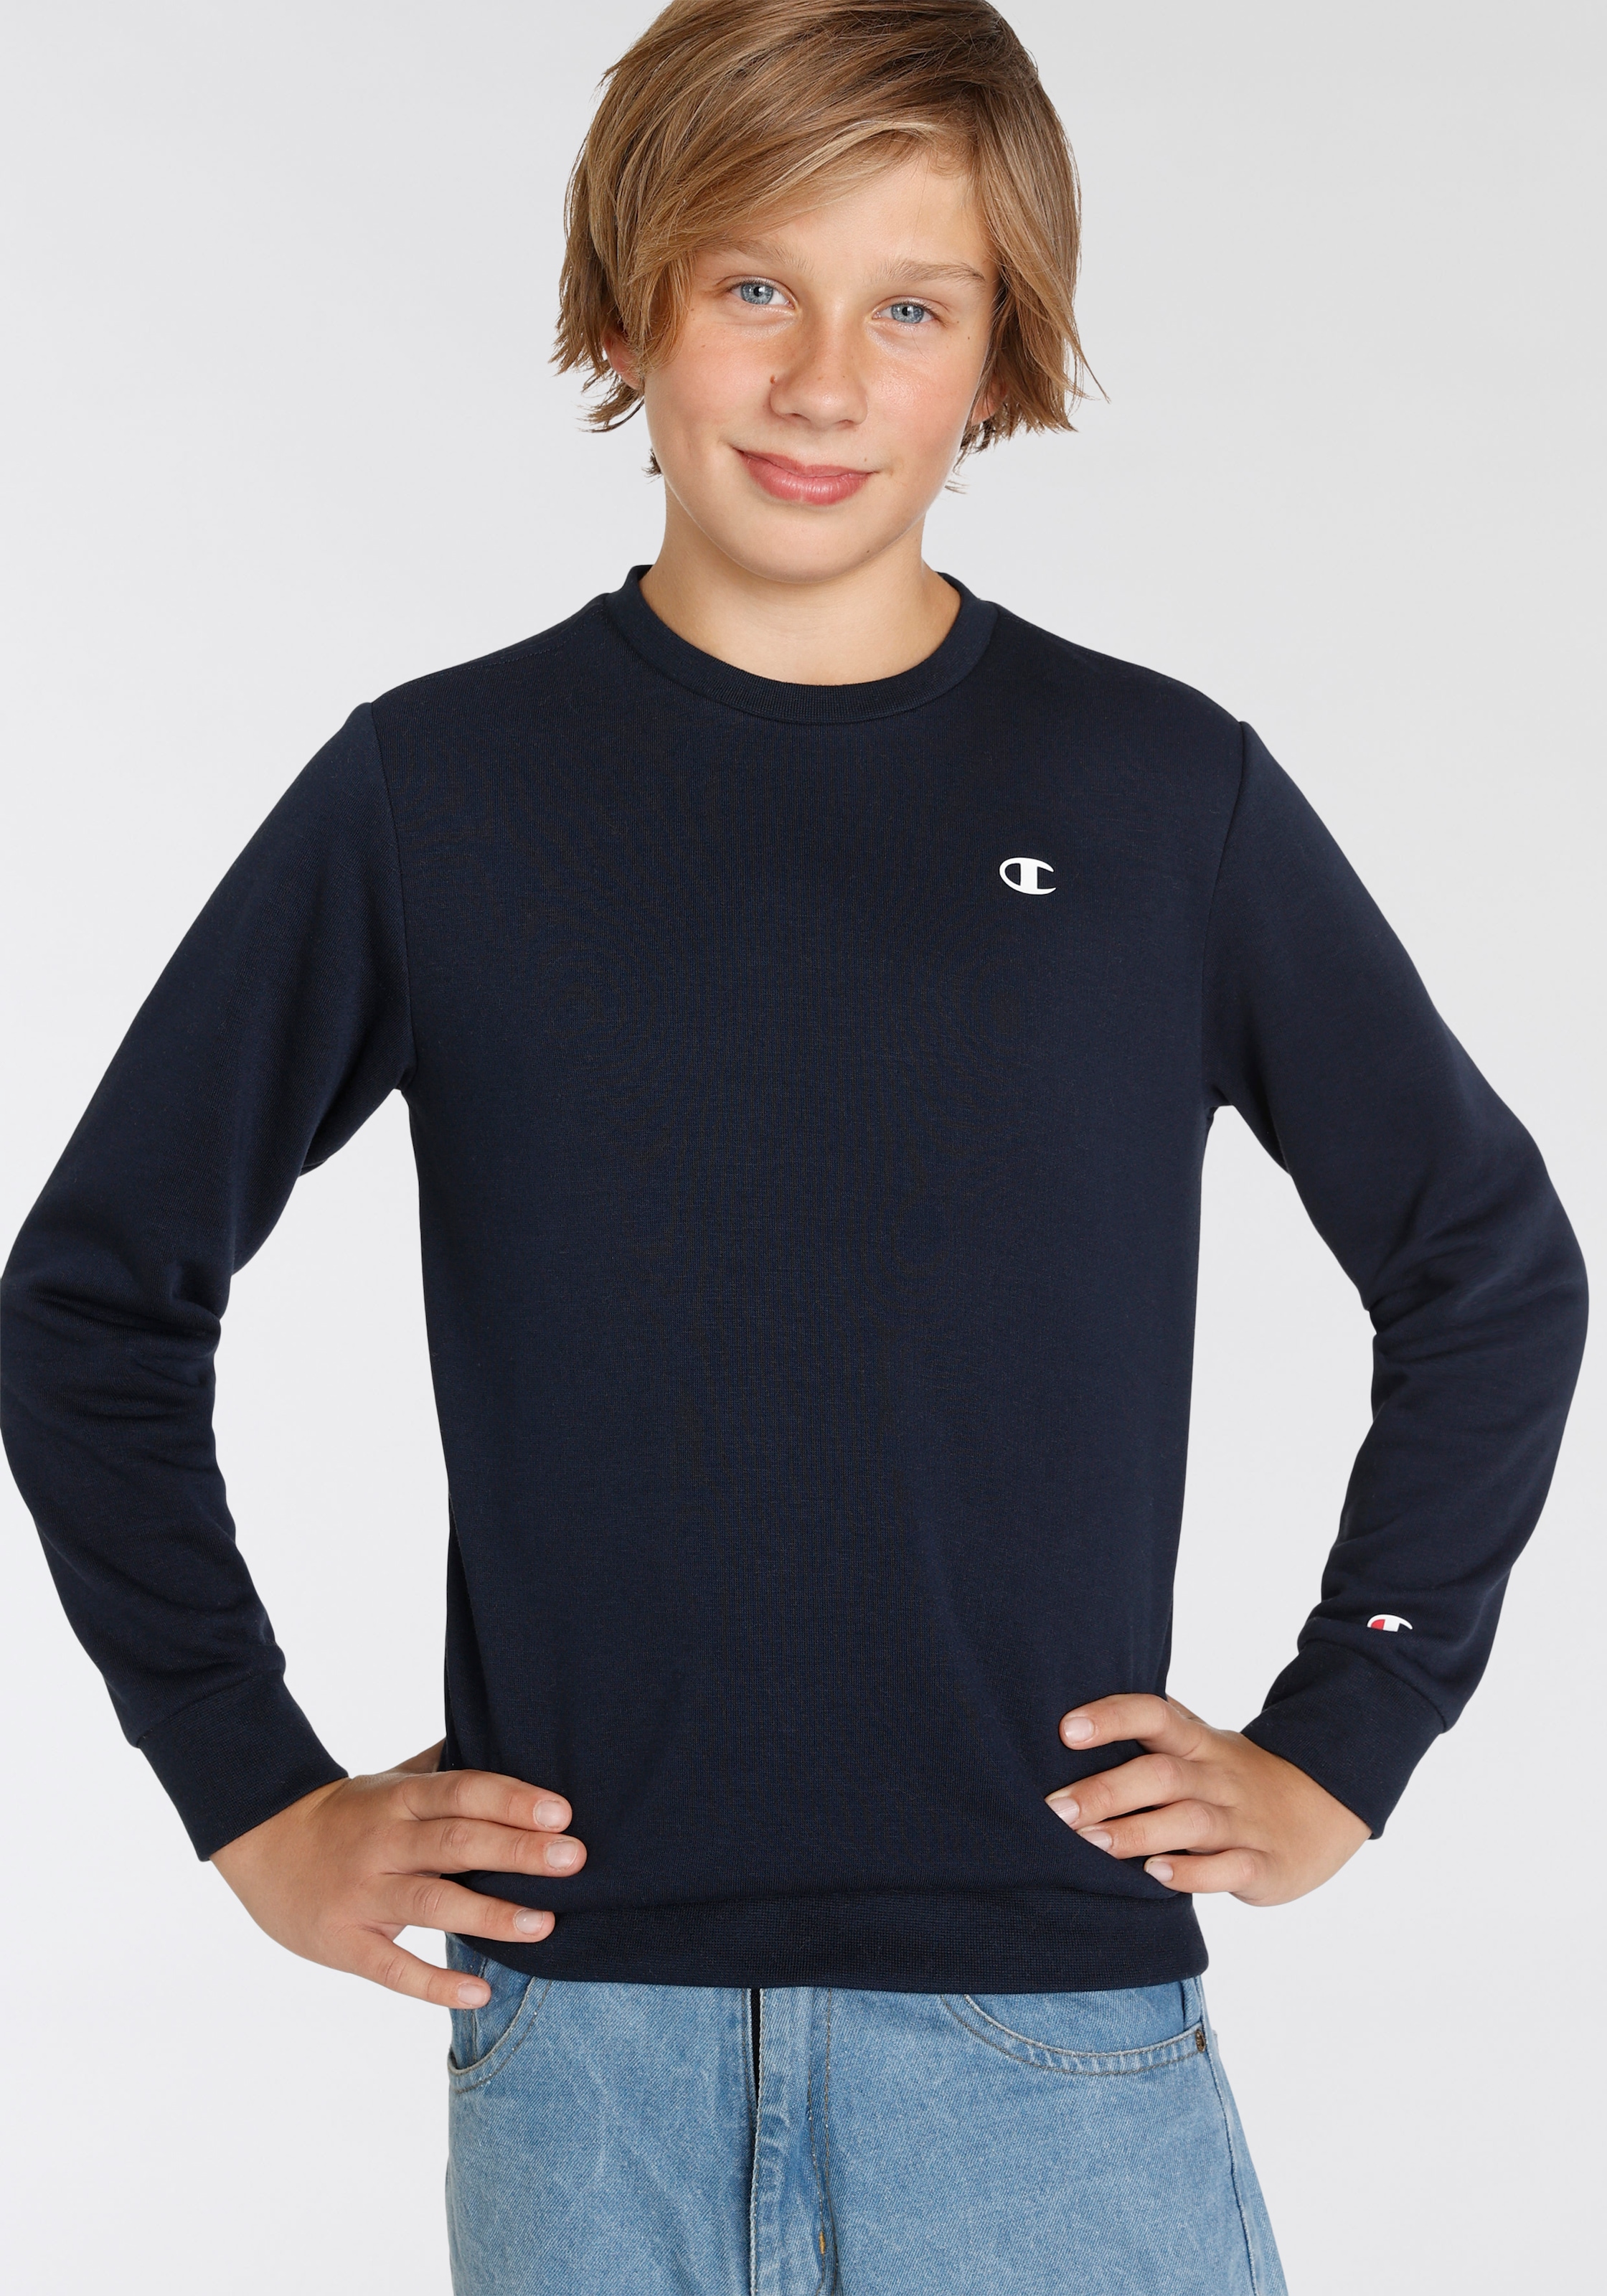 Trendige Champion »Basic Mindestbestellwert kaufen - ohne Kinder« für Sweatshirt Sweatshirt Crewneck